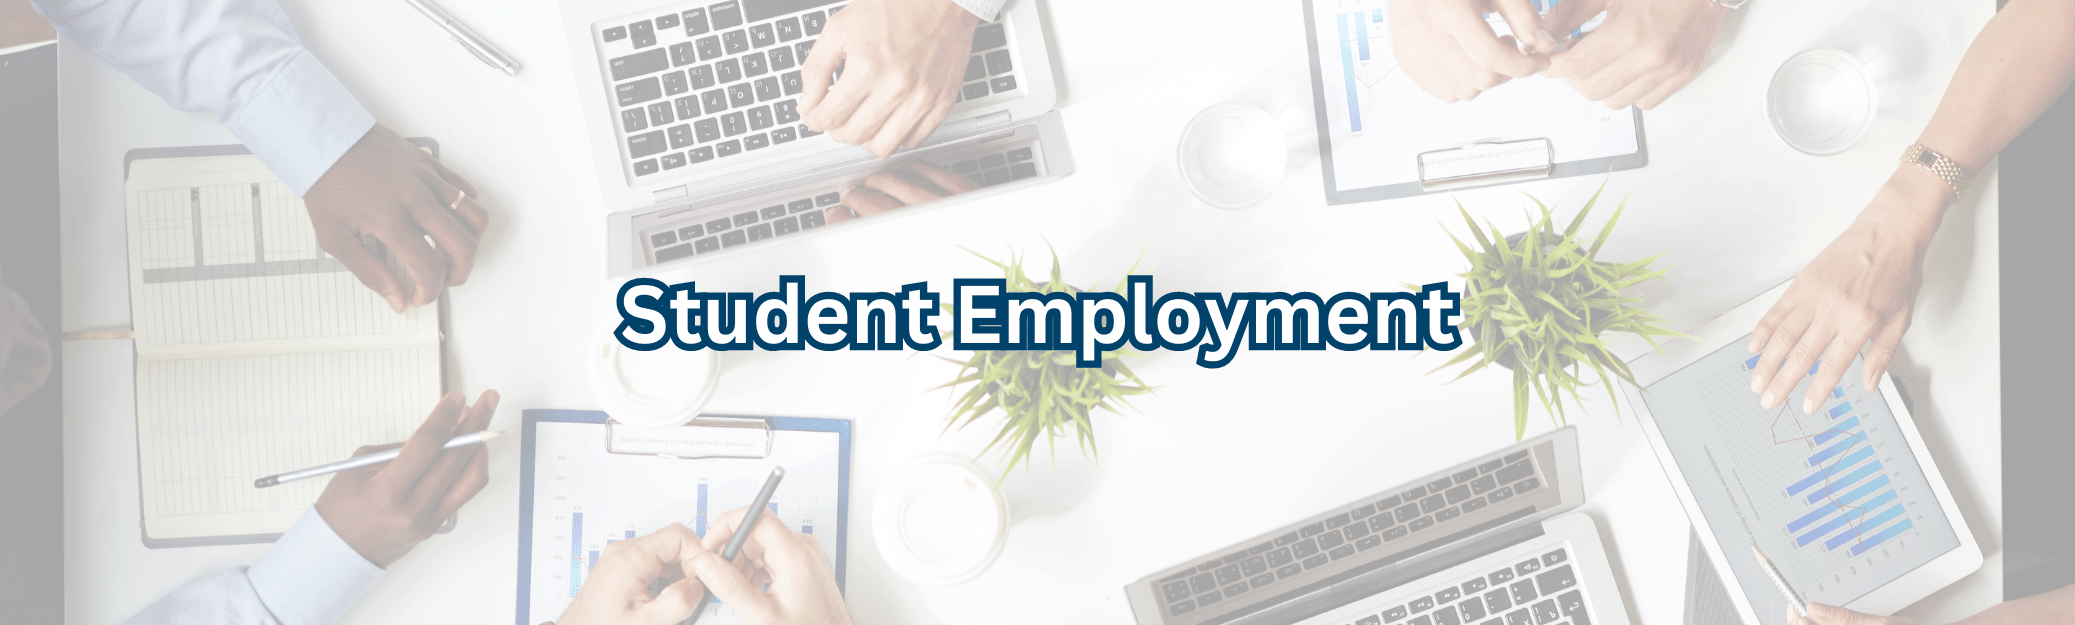 student employment banner 